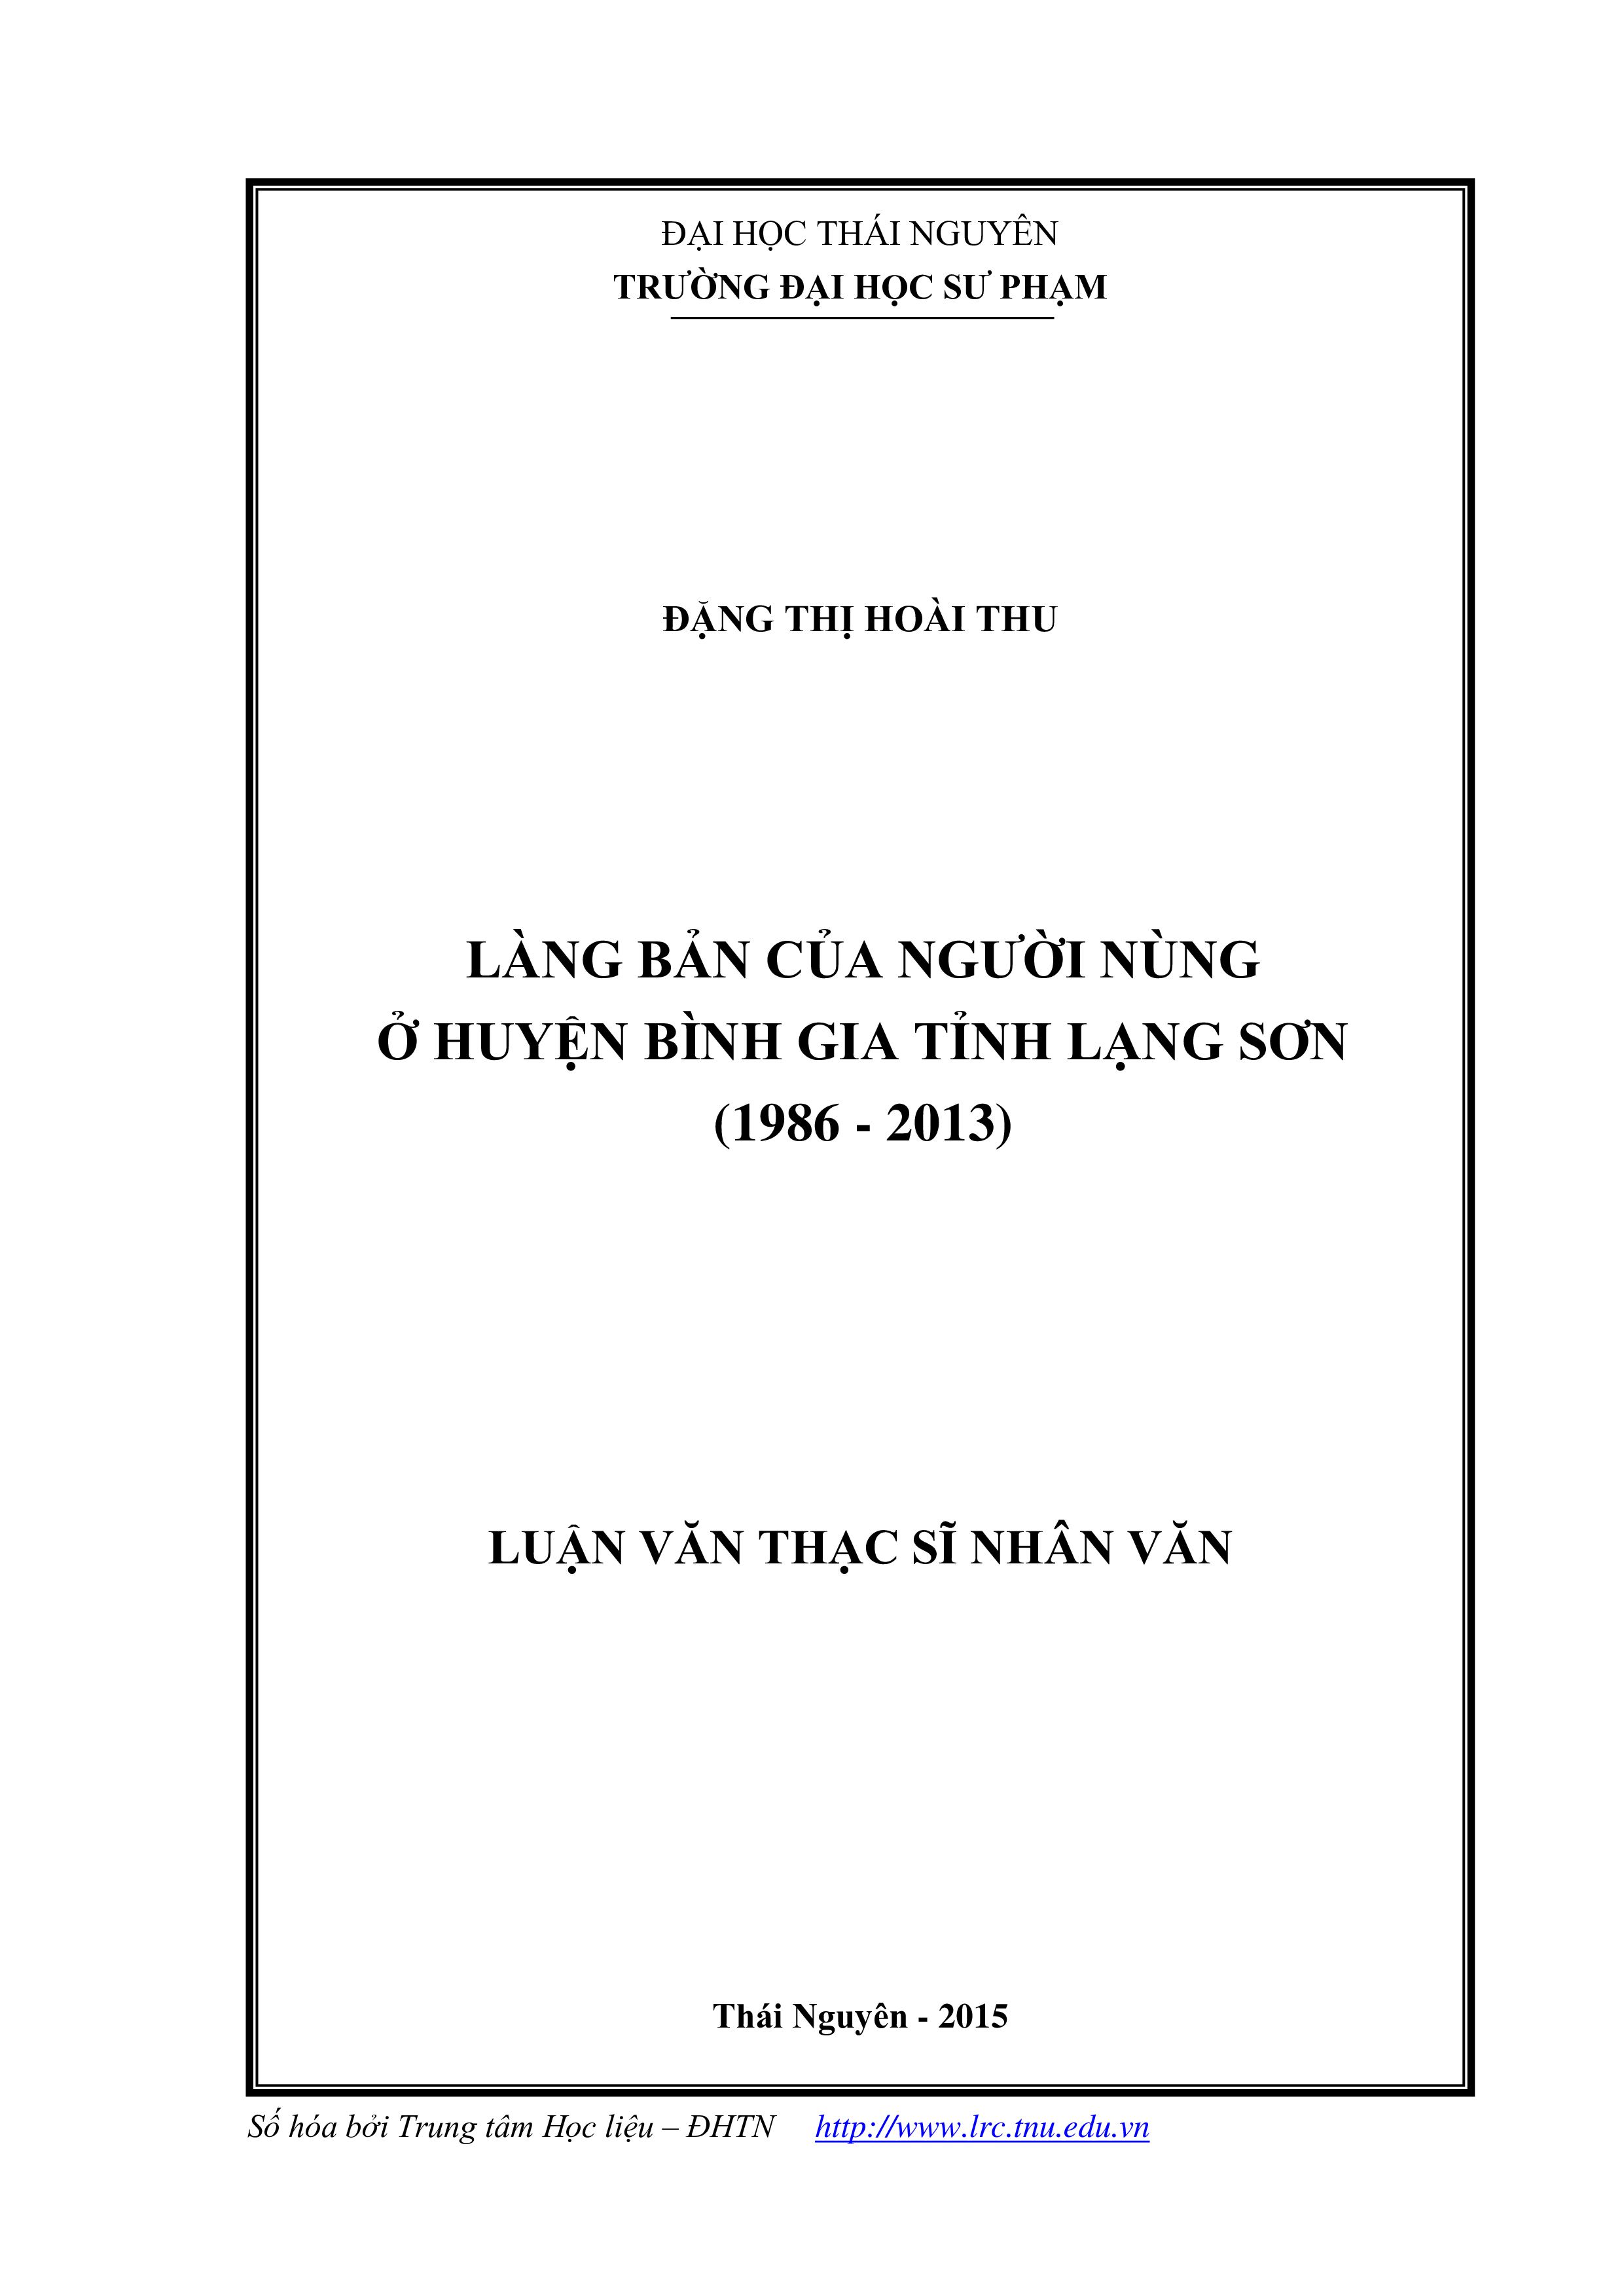 Làng bản của người nùng ở huyện Bình Gia tỉnh Lạng Sơn (1986-2013)